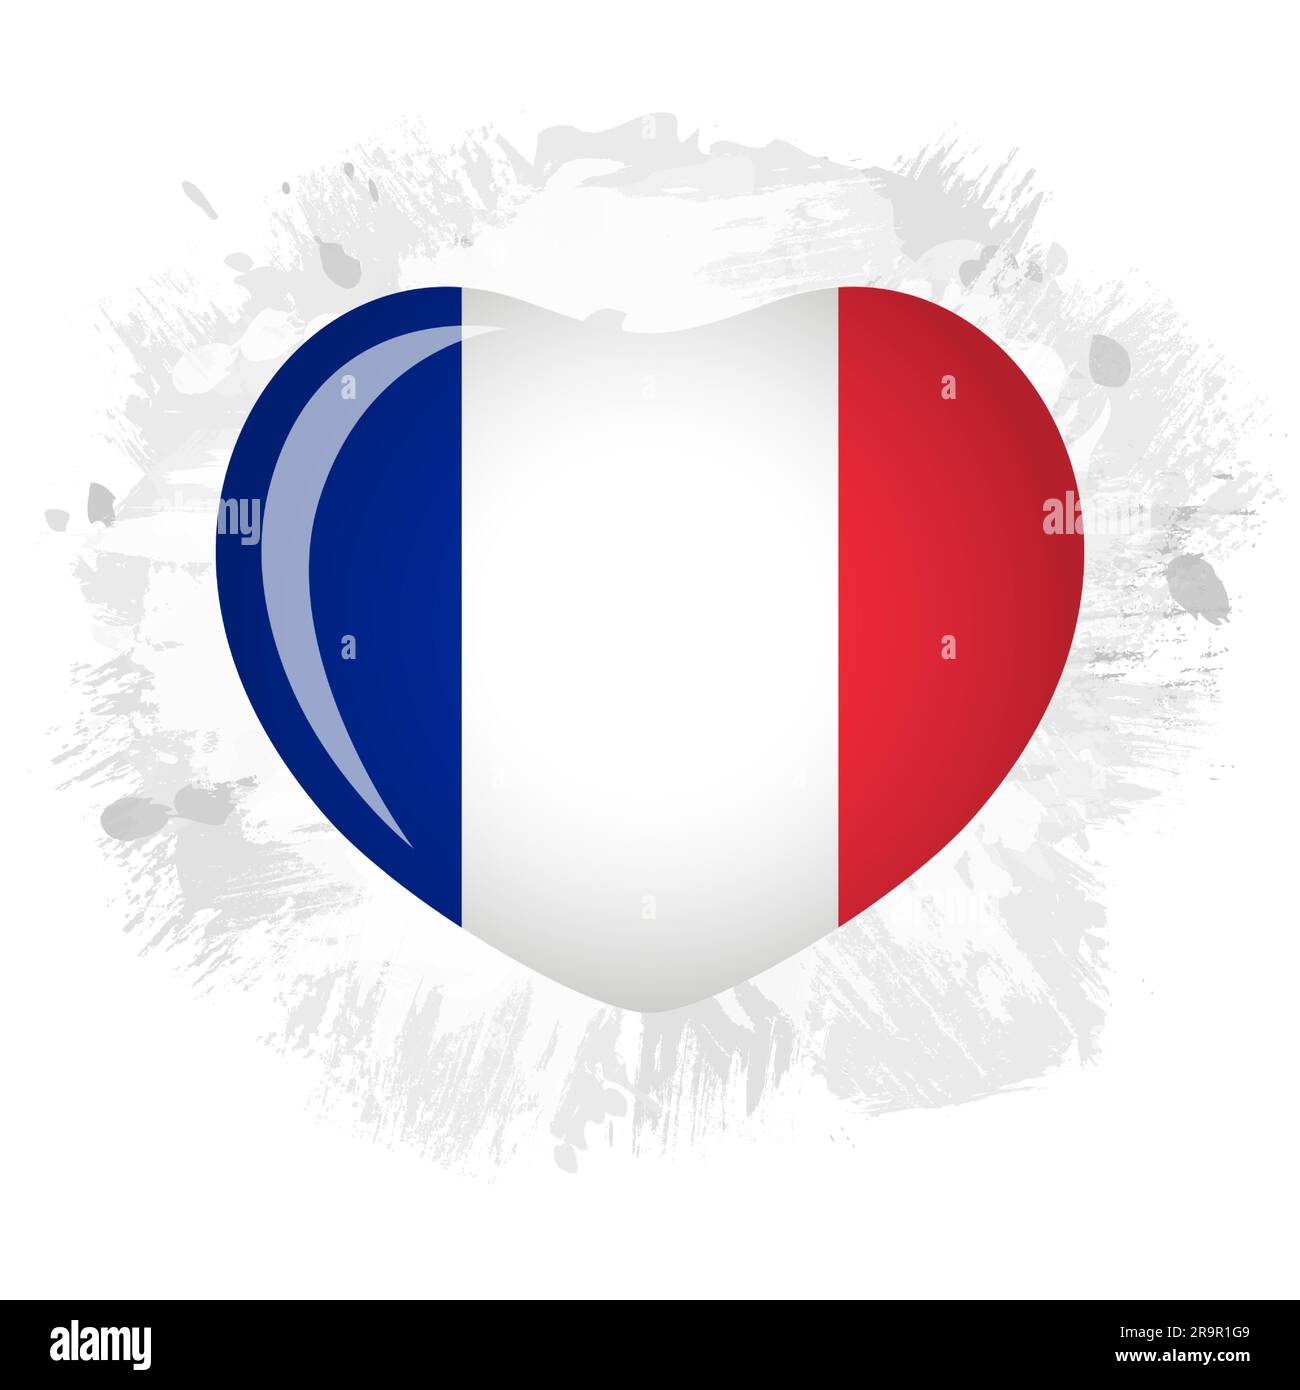 3D Herz mit französischer Flagge auf Pinselstrichen und Tinte auf modernem Hintergrund. Willkommen in Paris, Willkommen beim französischen Touristengeschäft Logo-Konzept. Stock Vektor